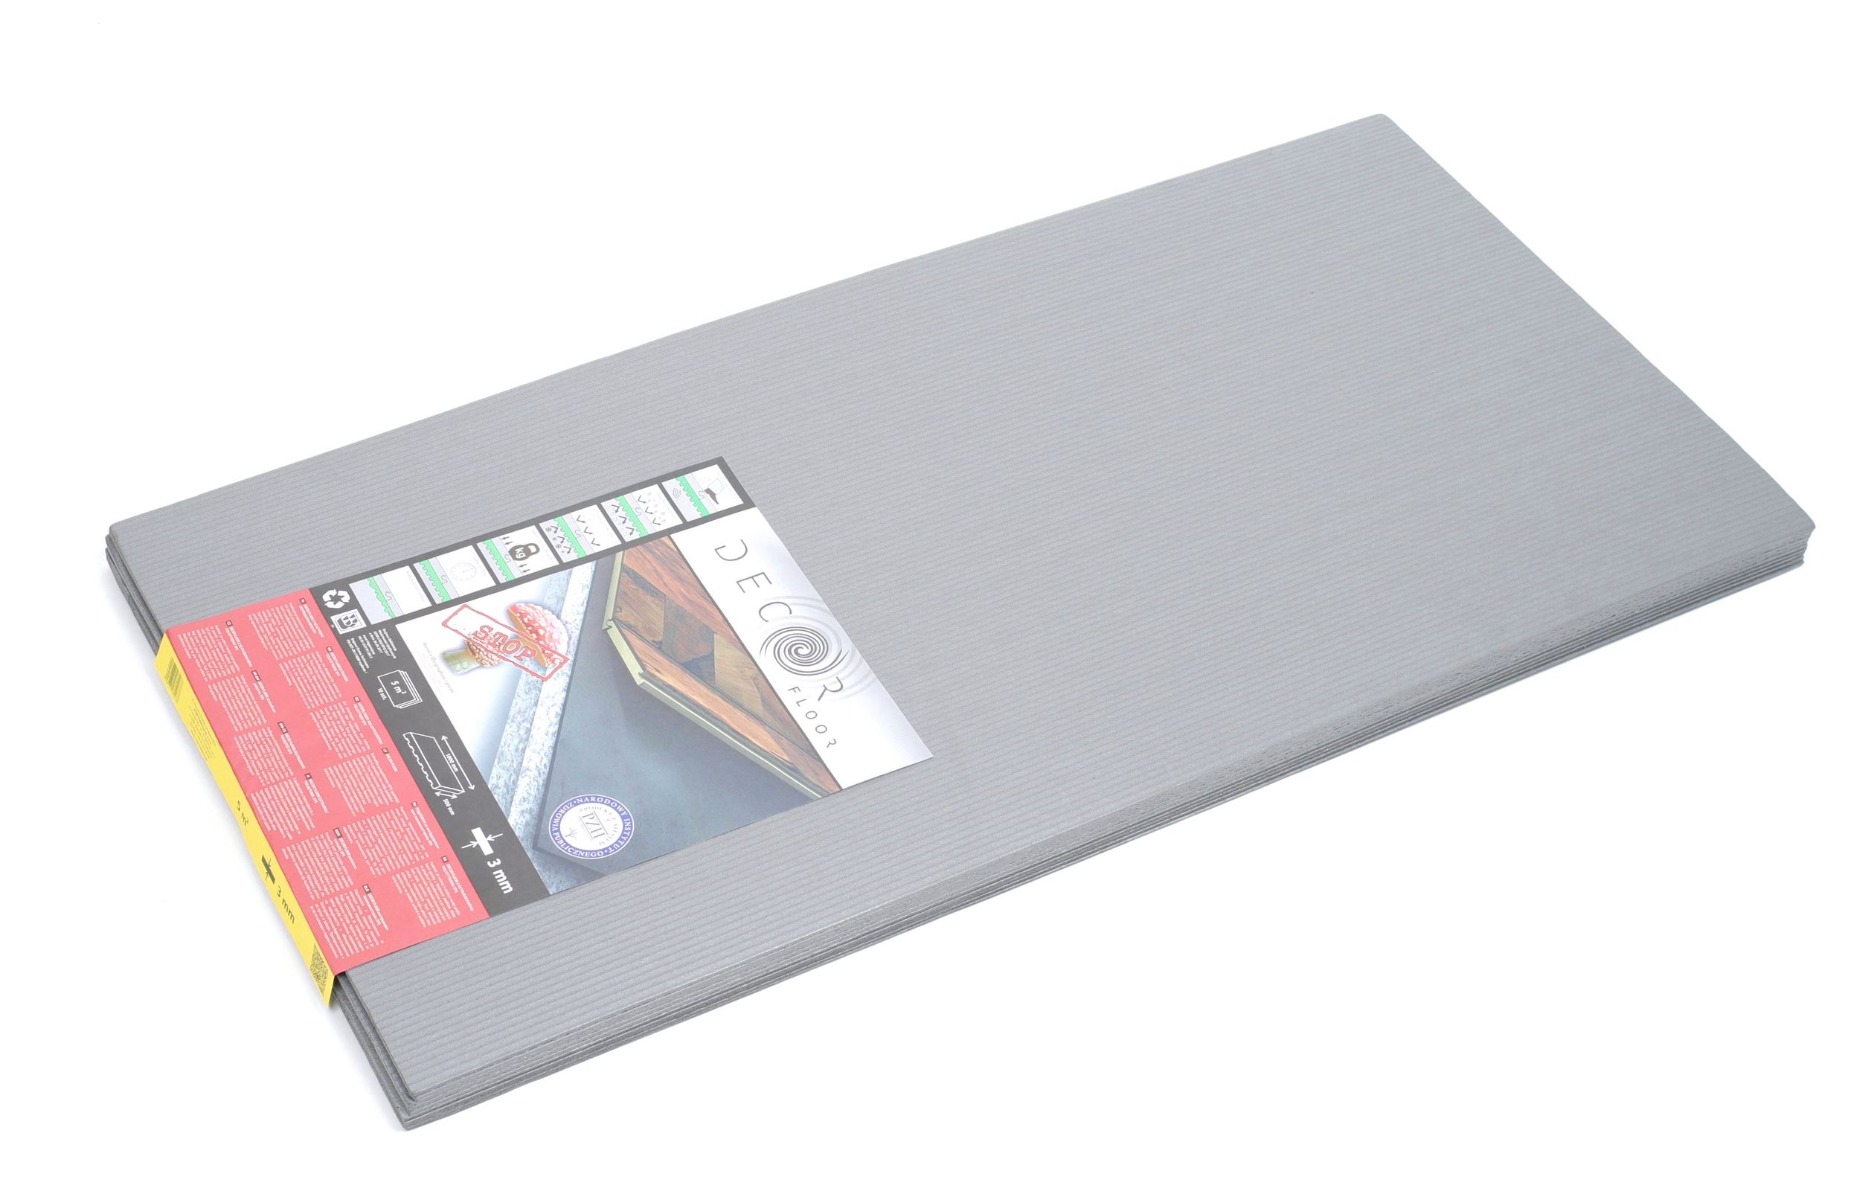 Szara płyta podkładowa z XPS o grubości 3 mm, stosowana pod panele podłogowe